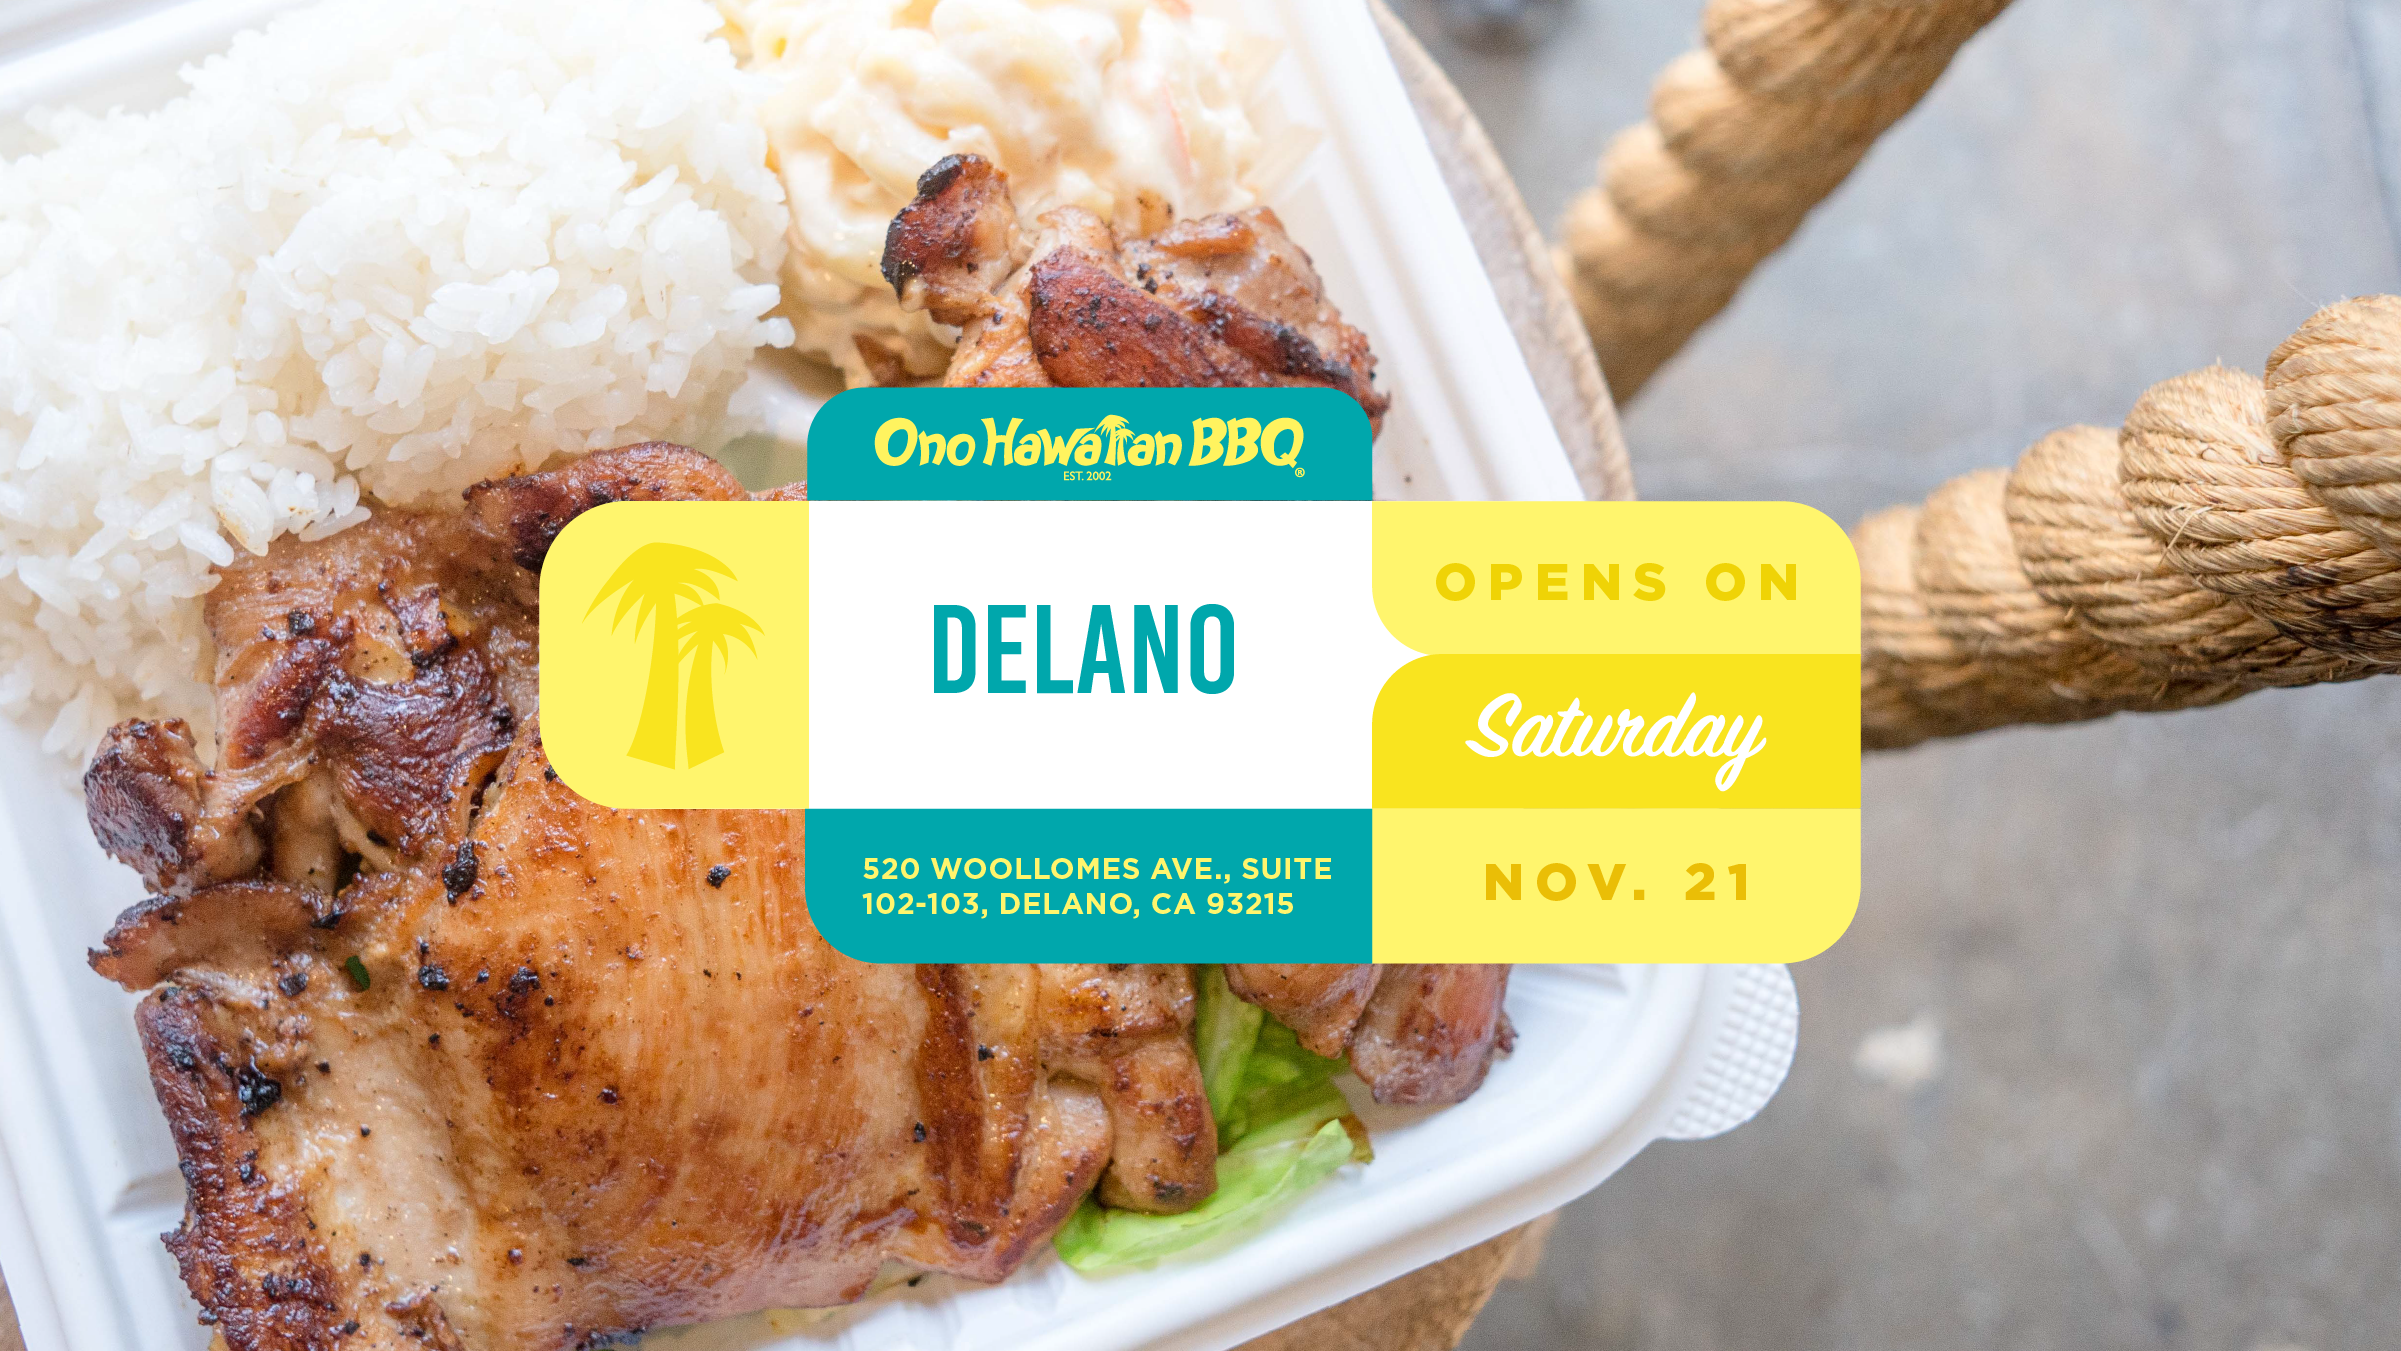 Ono Hawaiian BBQ Delano